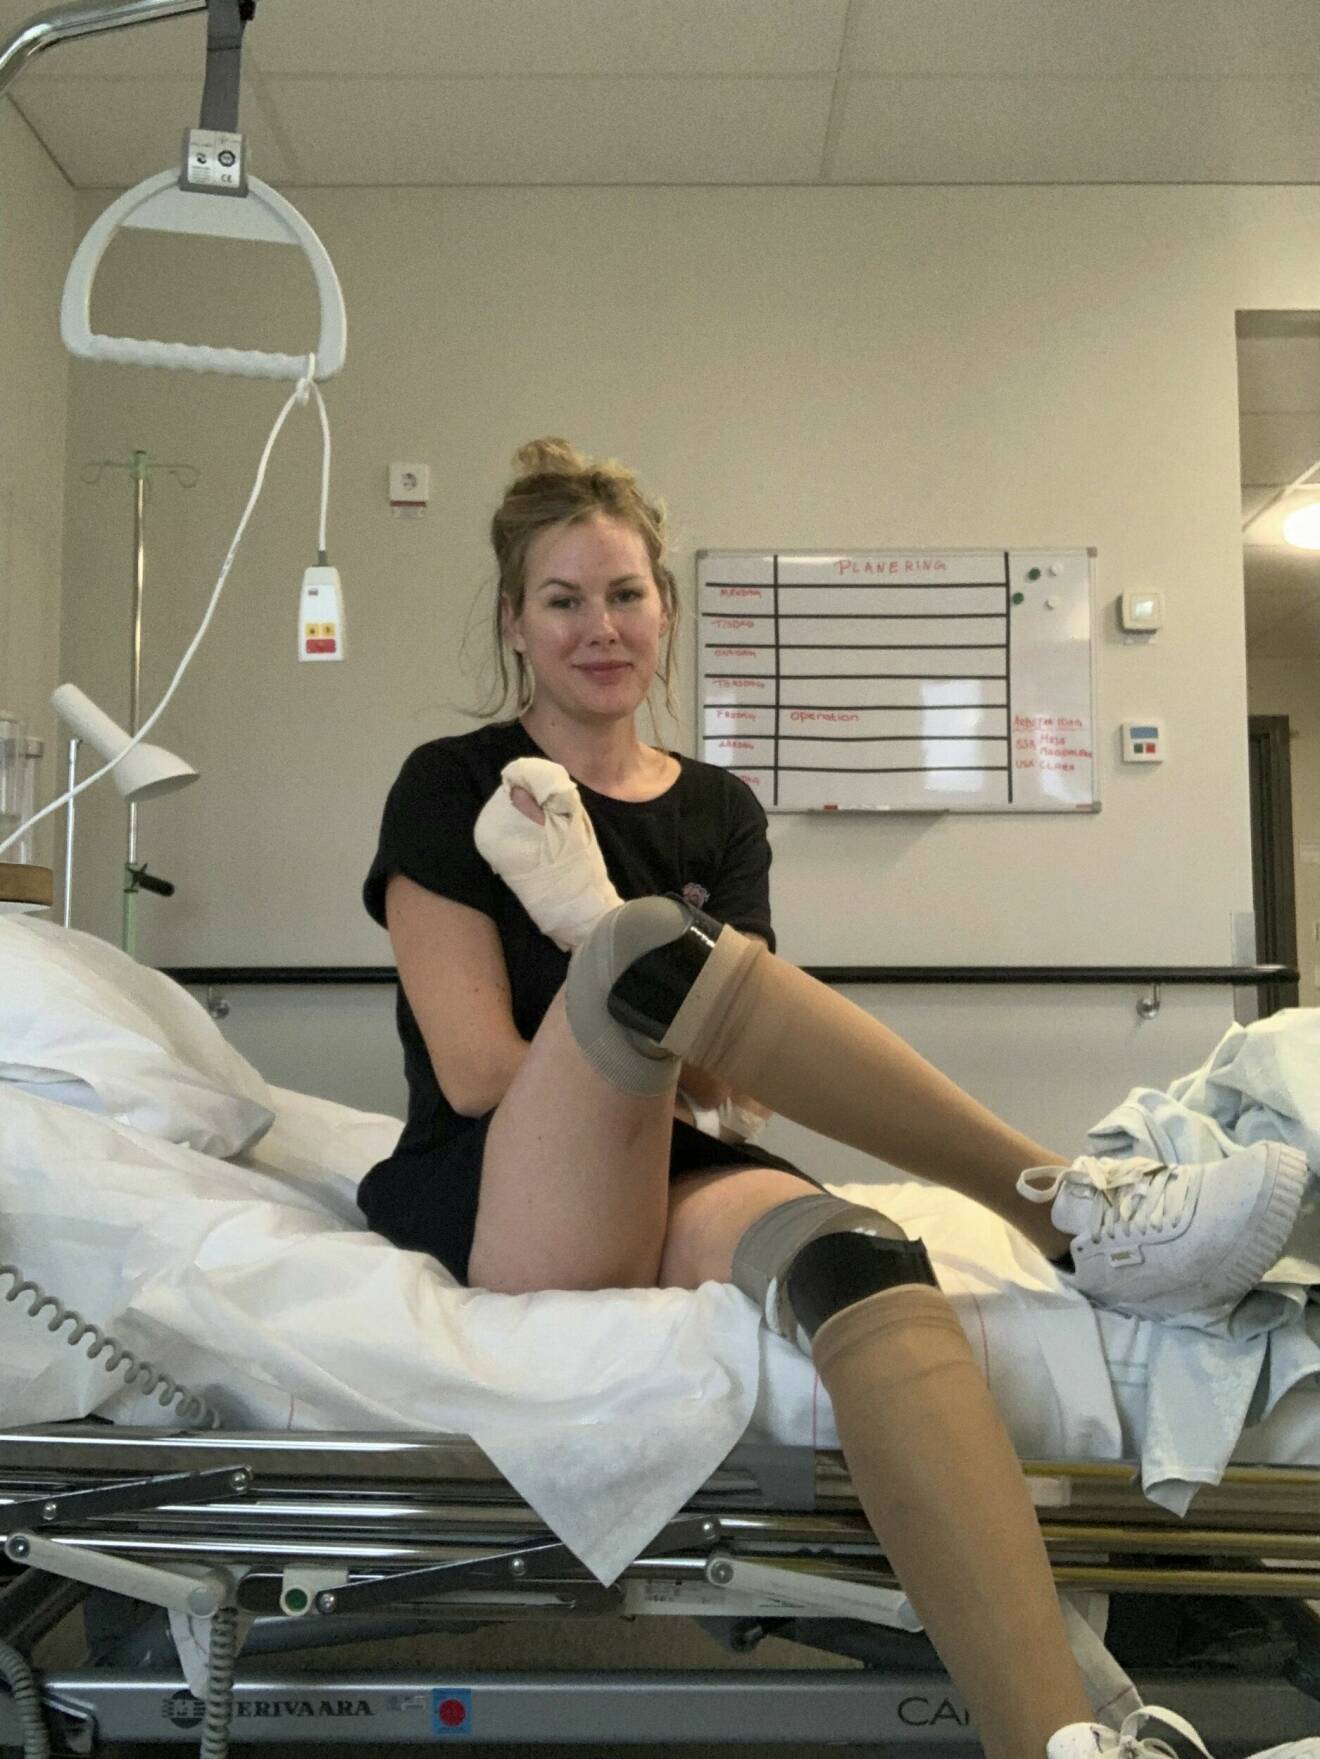 Elin Rantatalo tvingades amputera båda benen och nio fingrar när hon drabbades av septisk chock orsakad av mördarbakterier.